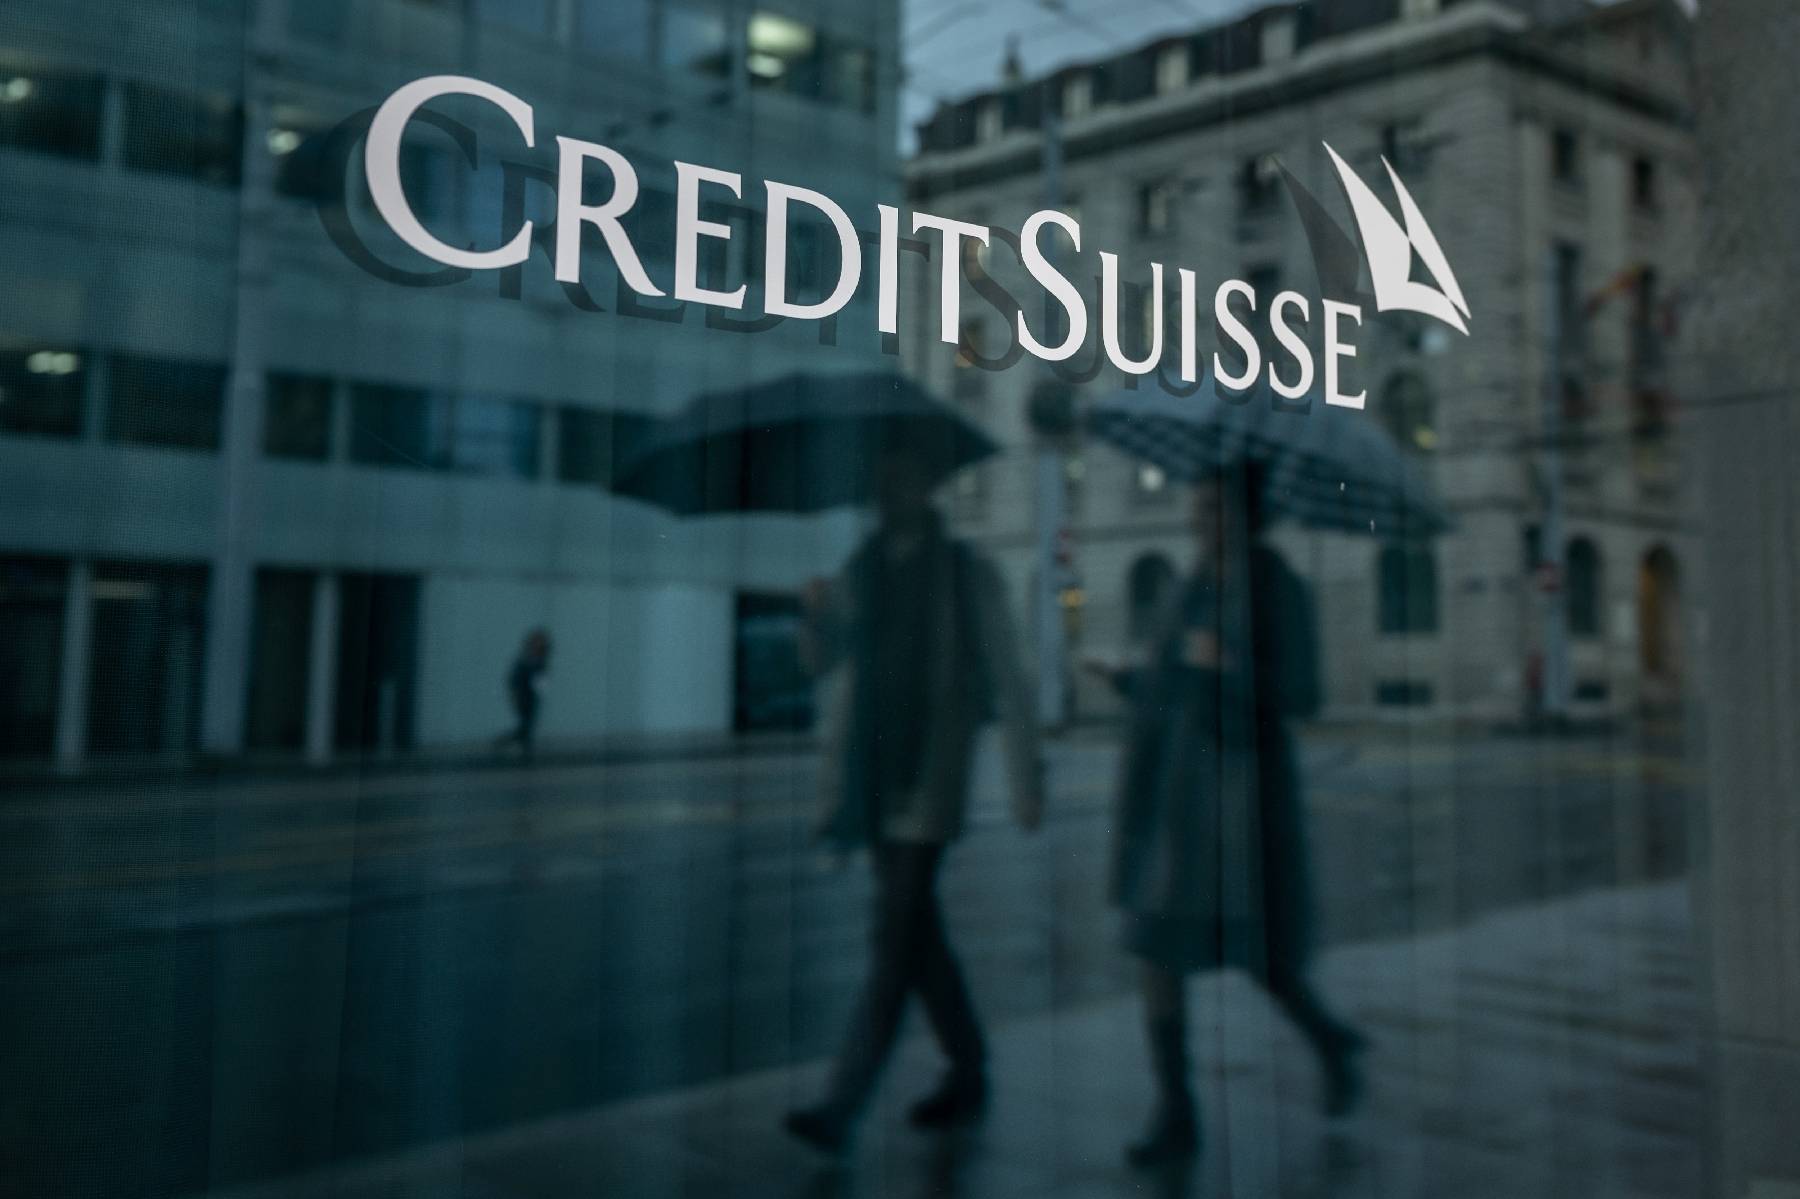 La direction de Credit Suisse face à la colère des actionnaires